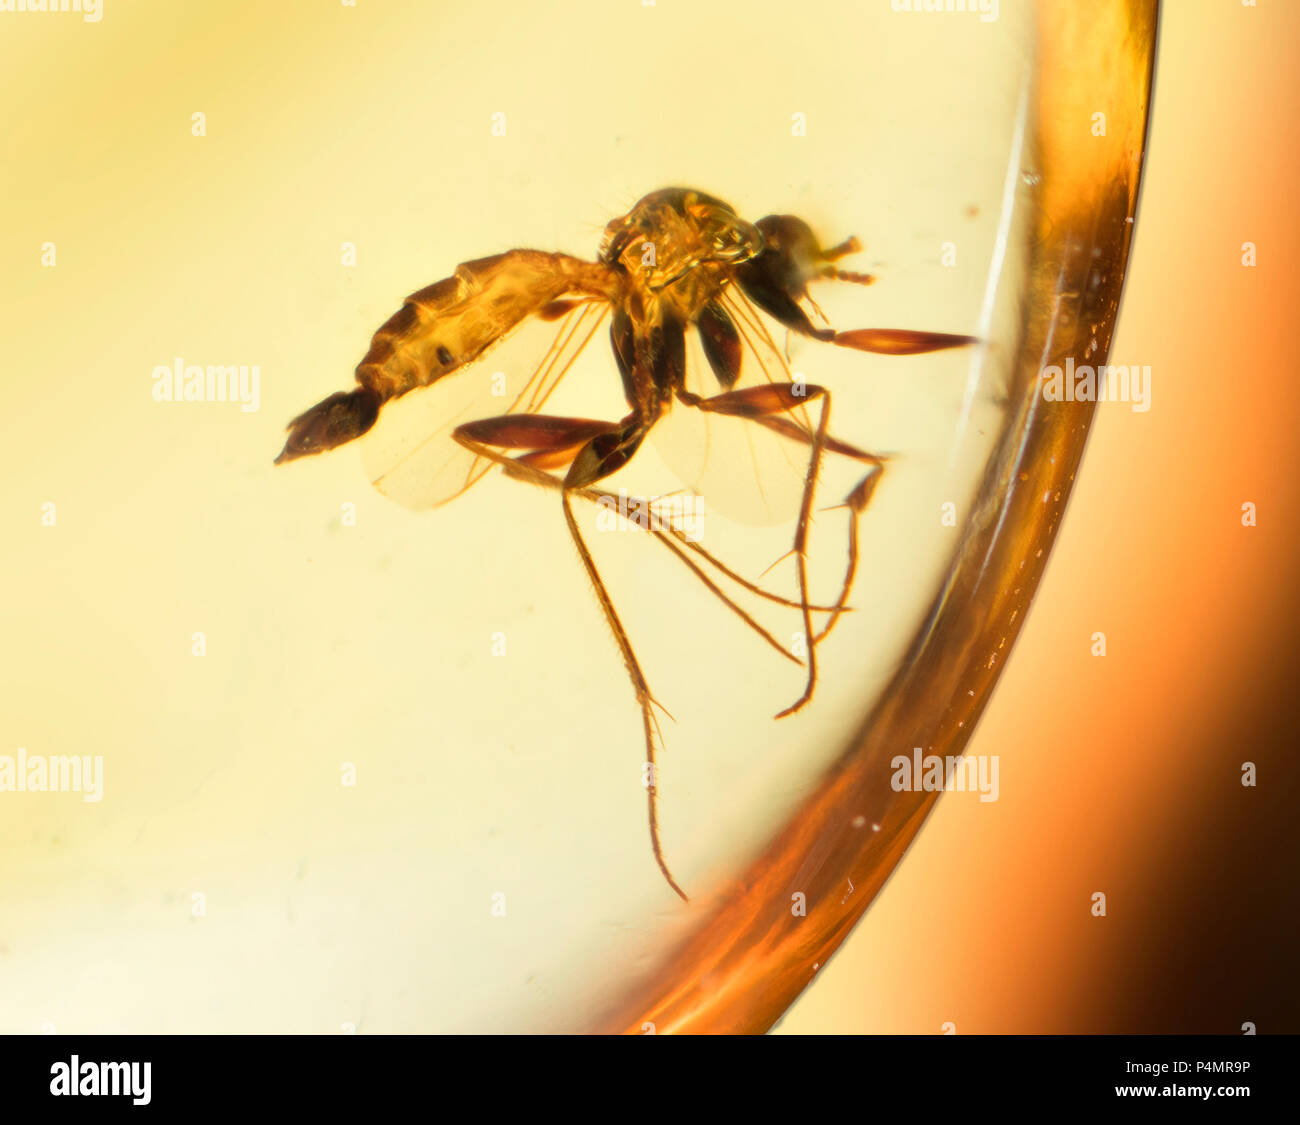 Intrappolato volare insetti in ambra birmana Foto Stock